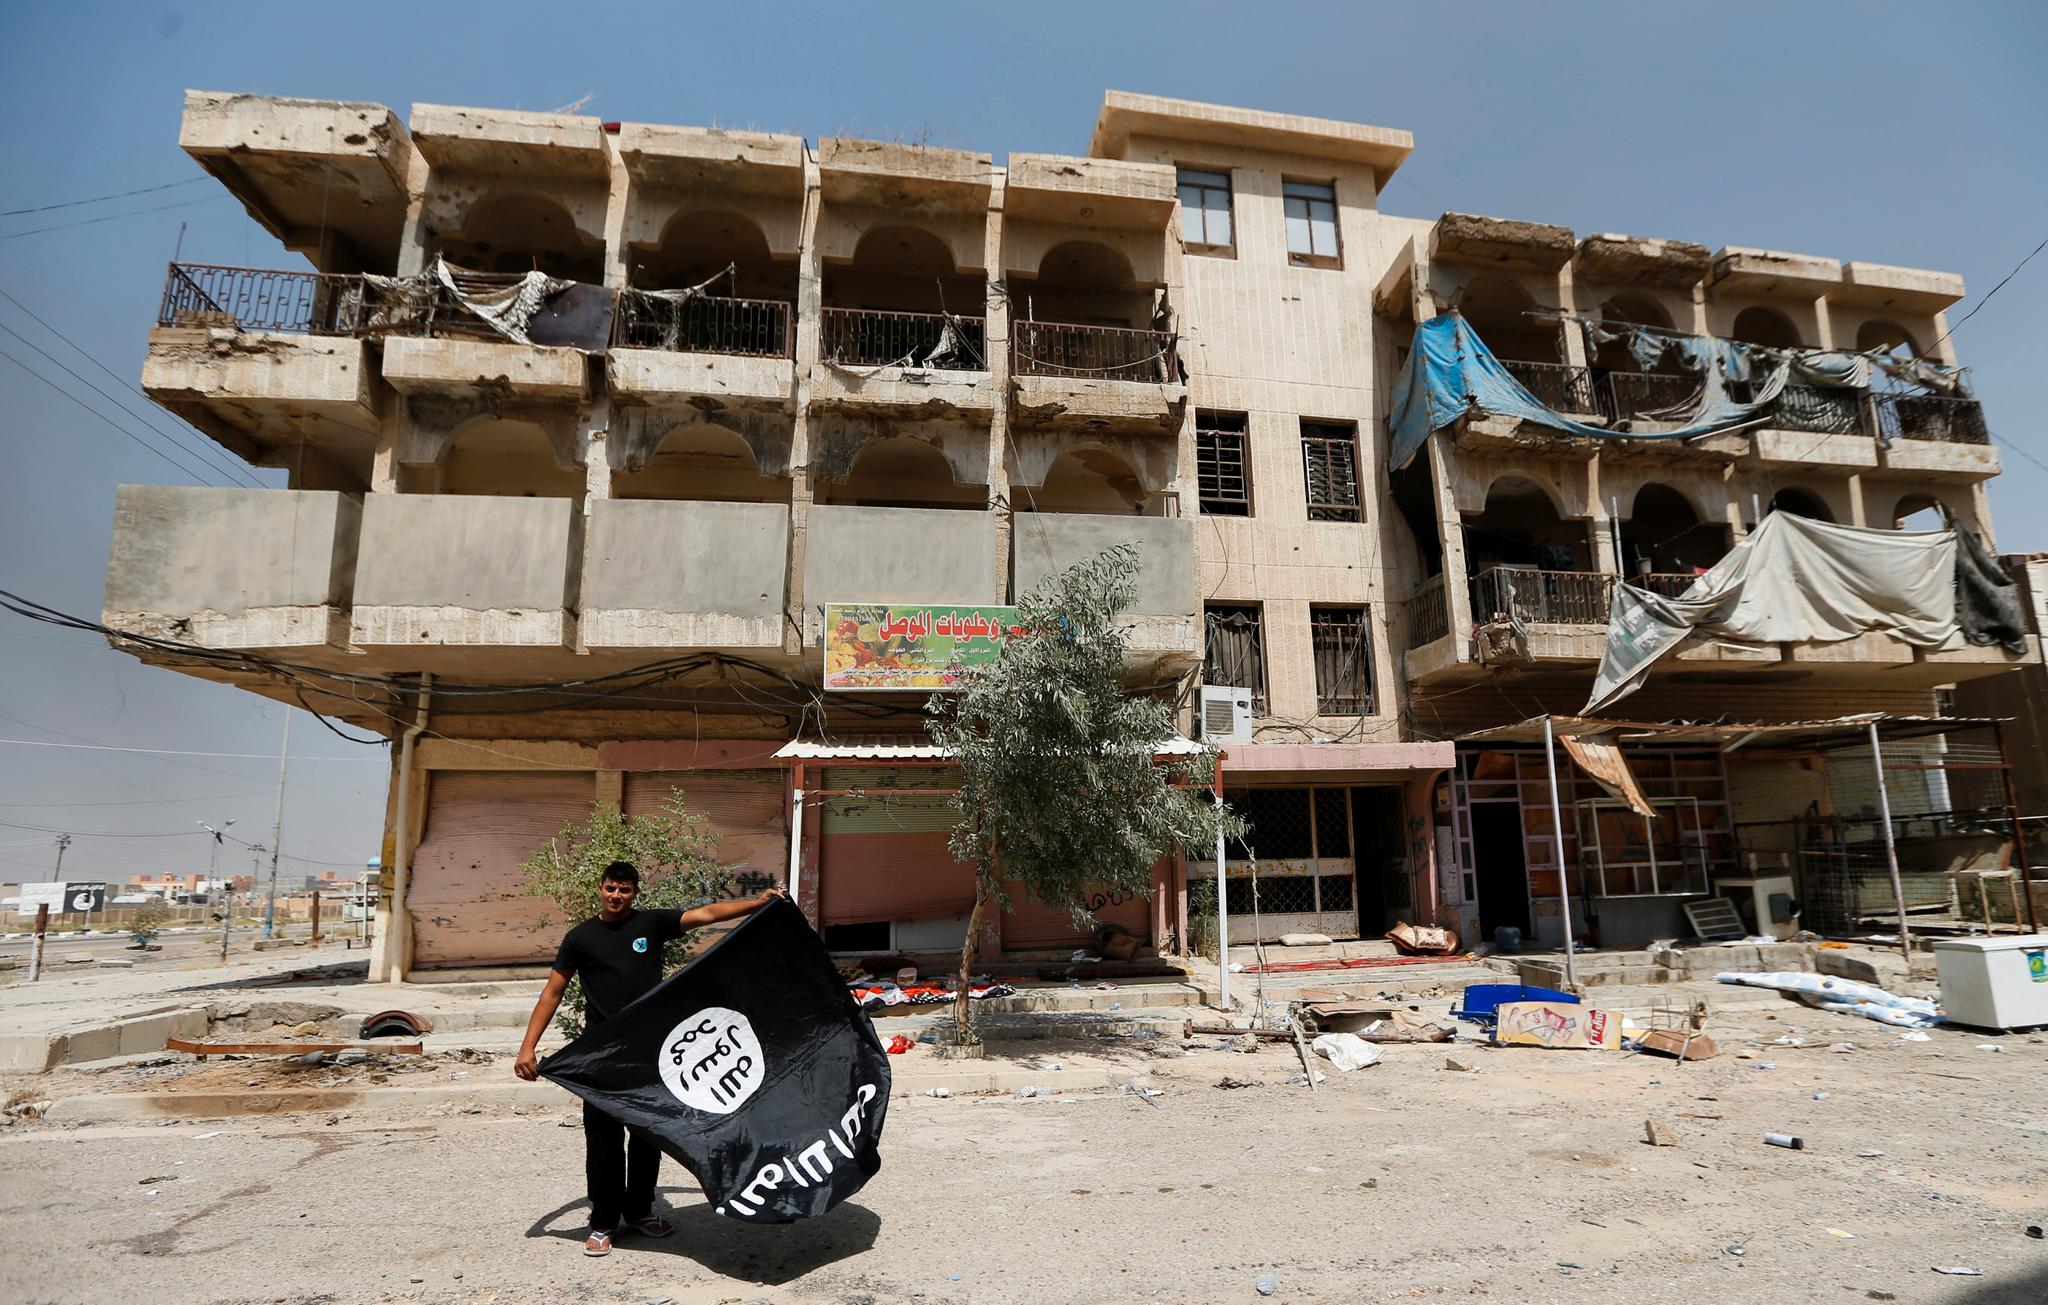 Et medlem av irakiske sikkerhetsstyrker holder et IS-flagg etter å ha tatt det ned fra en bygning i Falluja. Byen hadde 300.000 innbygger før ISIL (senere IS) overtok kontrollen i januar 2014. Nå er store deler av byen fullstendig ødelagt.